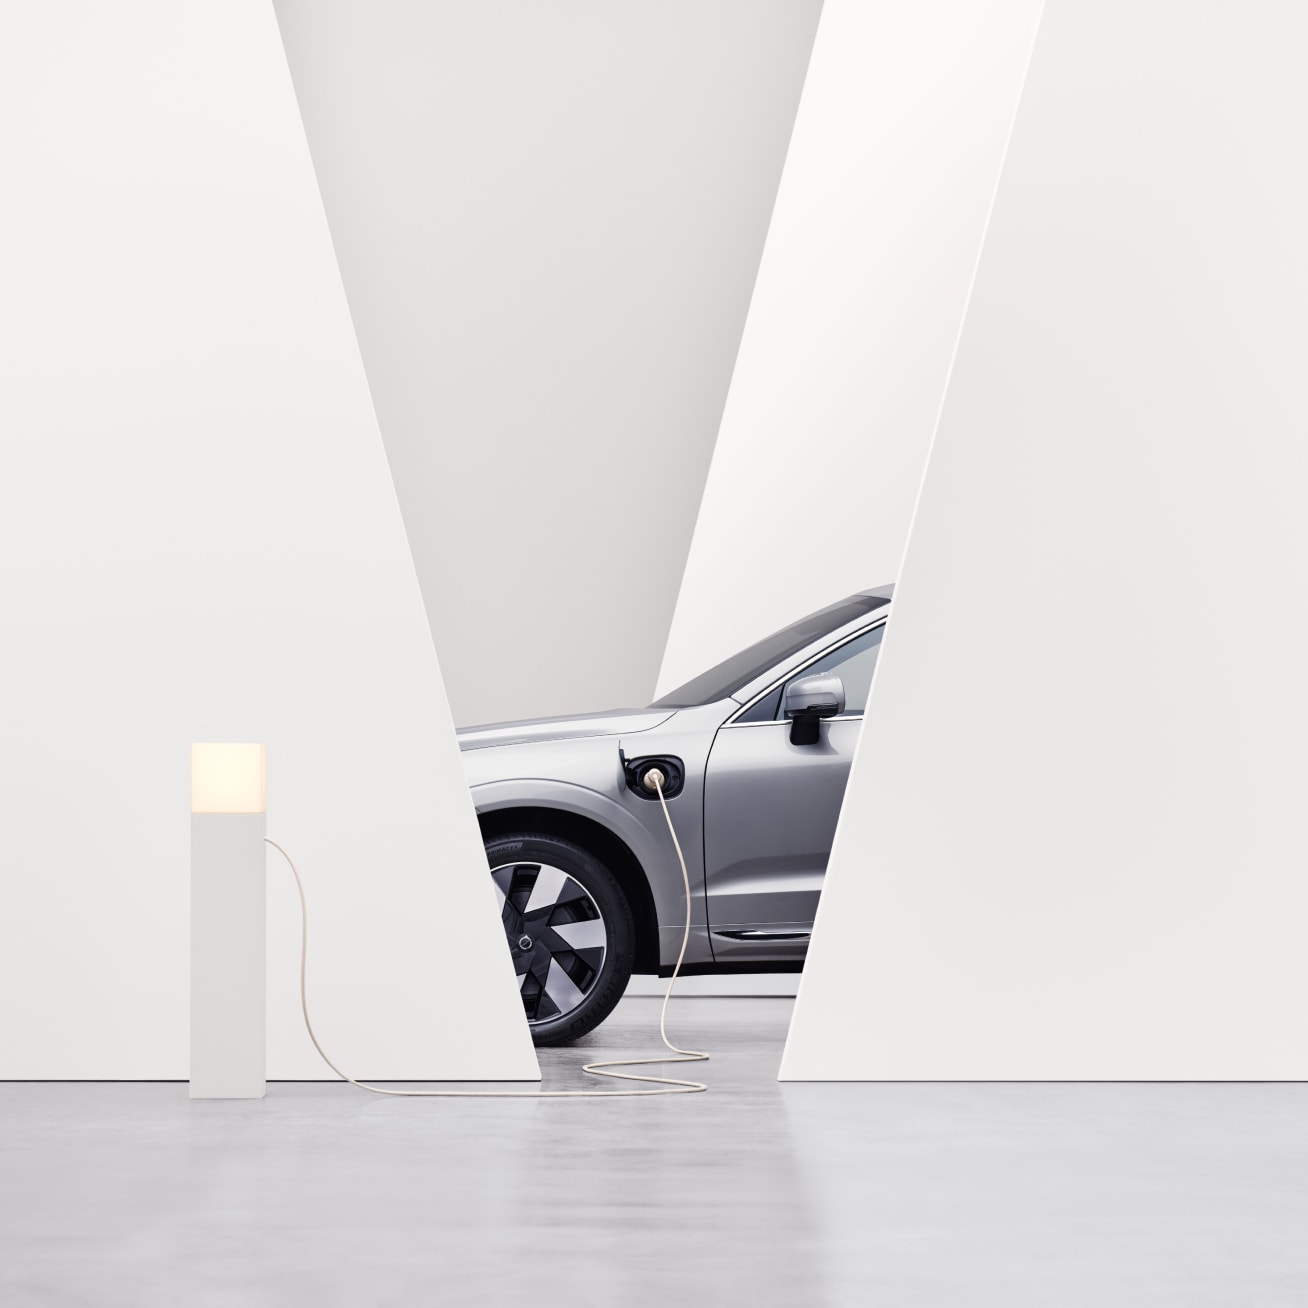 Vue partielle d’une Volvo vue de côté, dans un environnement intérieur blanc, en train de charger à une borne de recharge